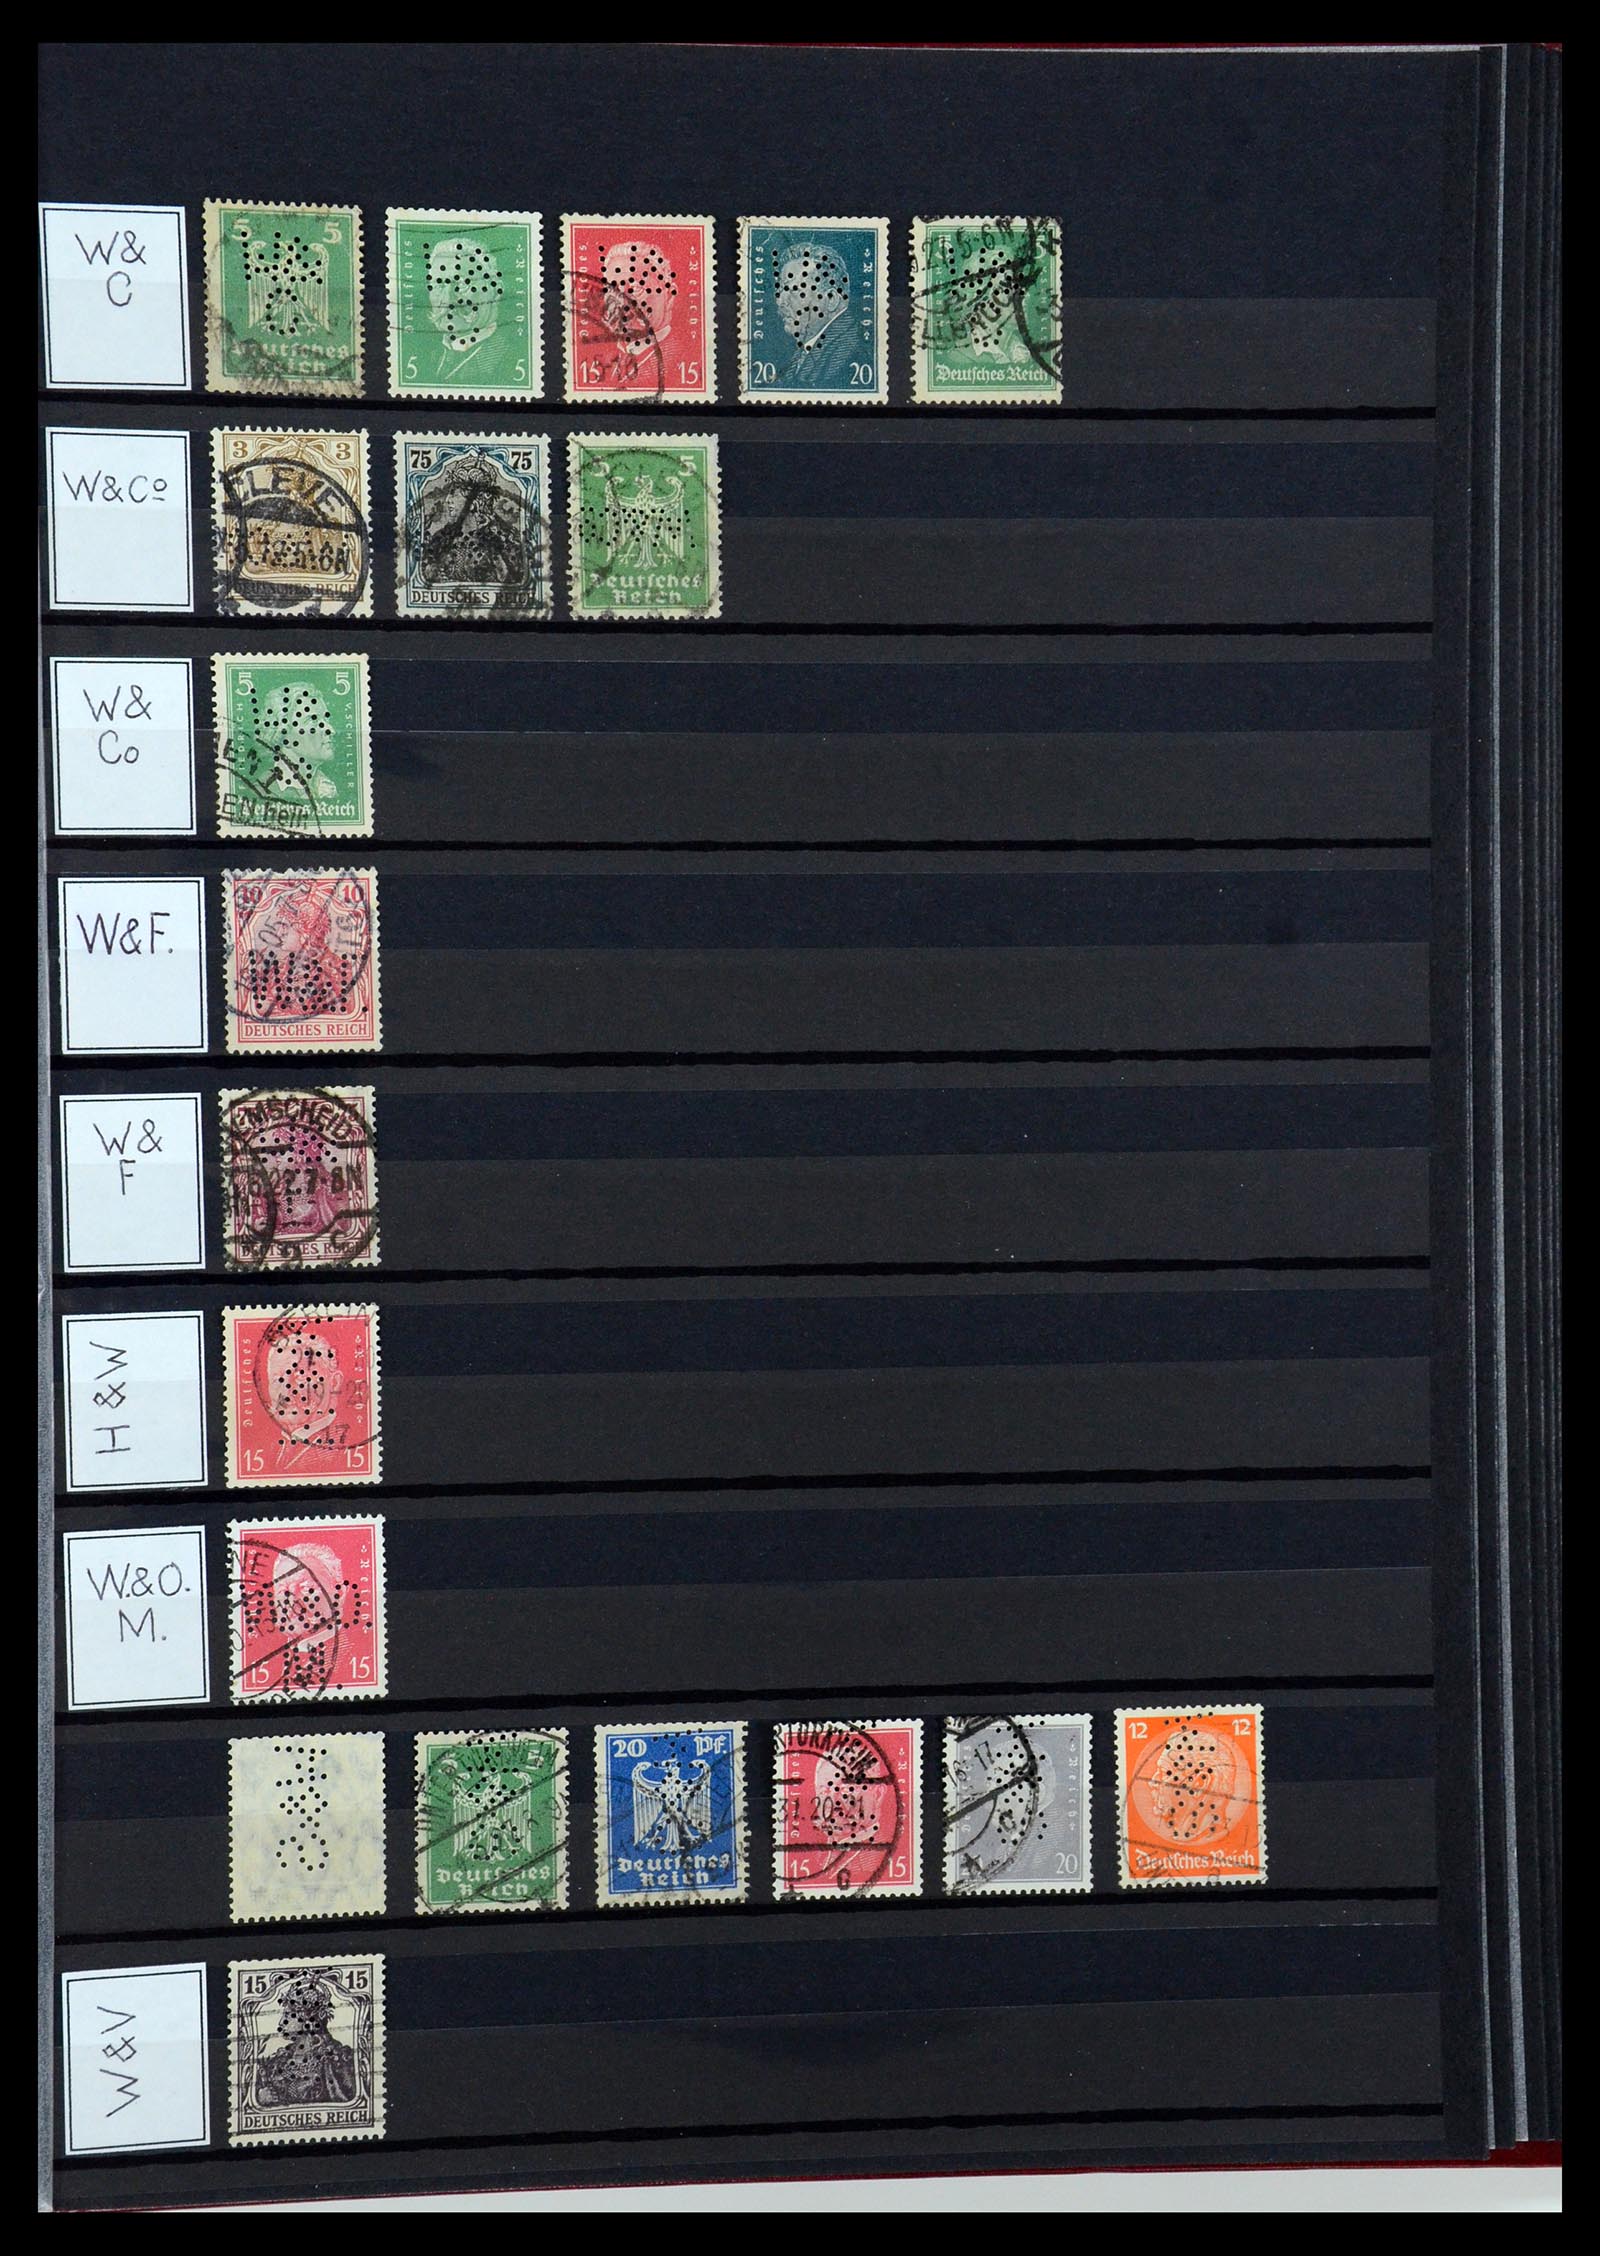 36405 345 - Stamp collection 36405 German Reich perfins 1880-1945.